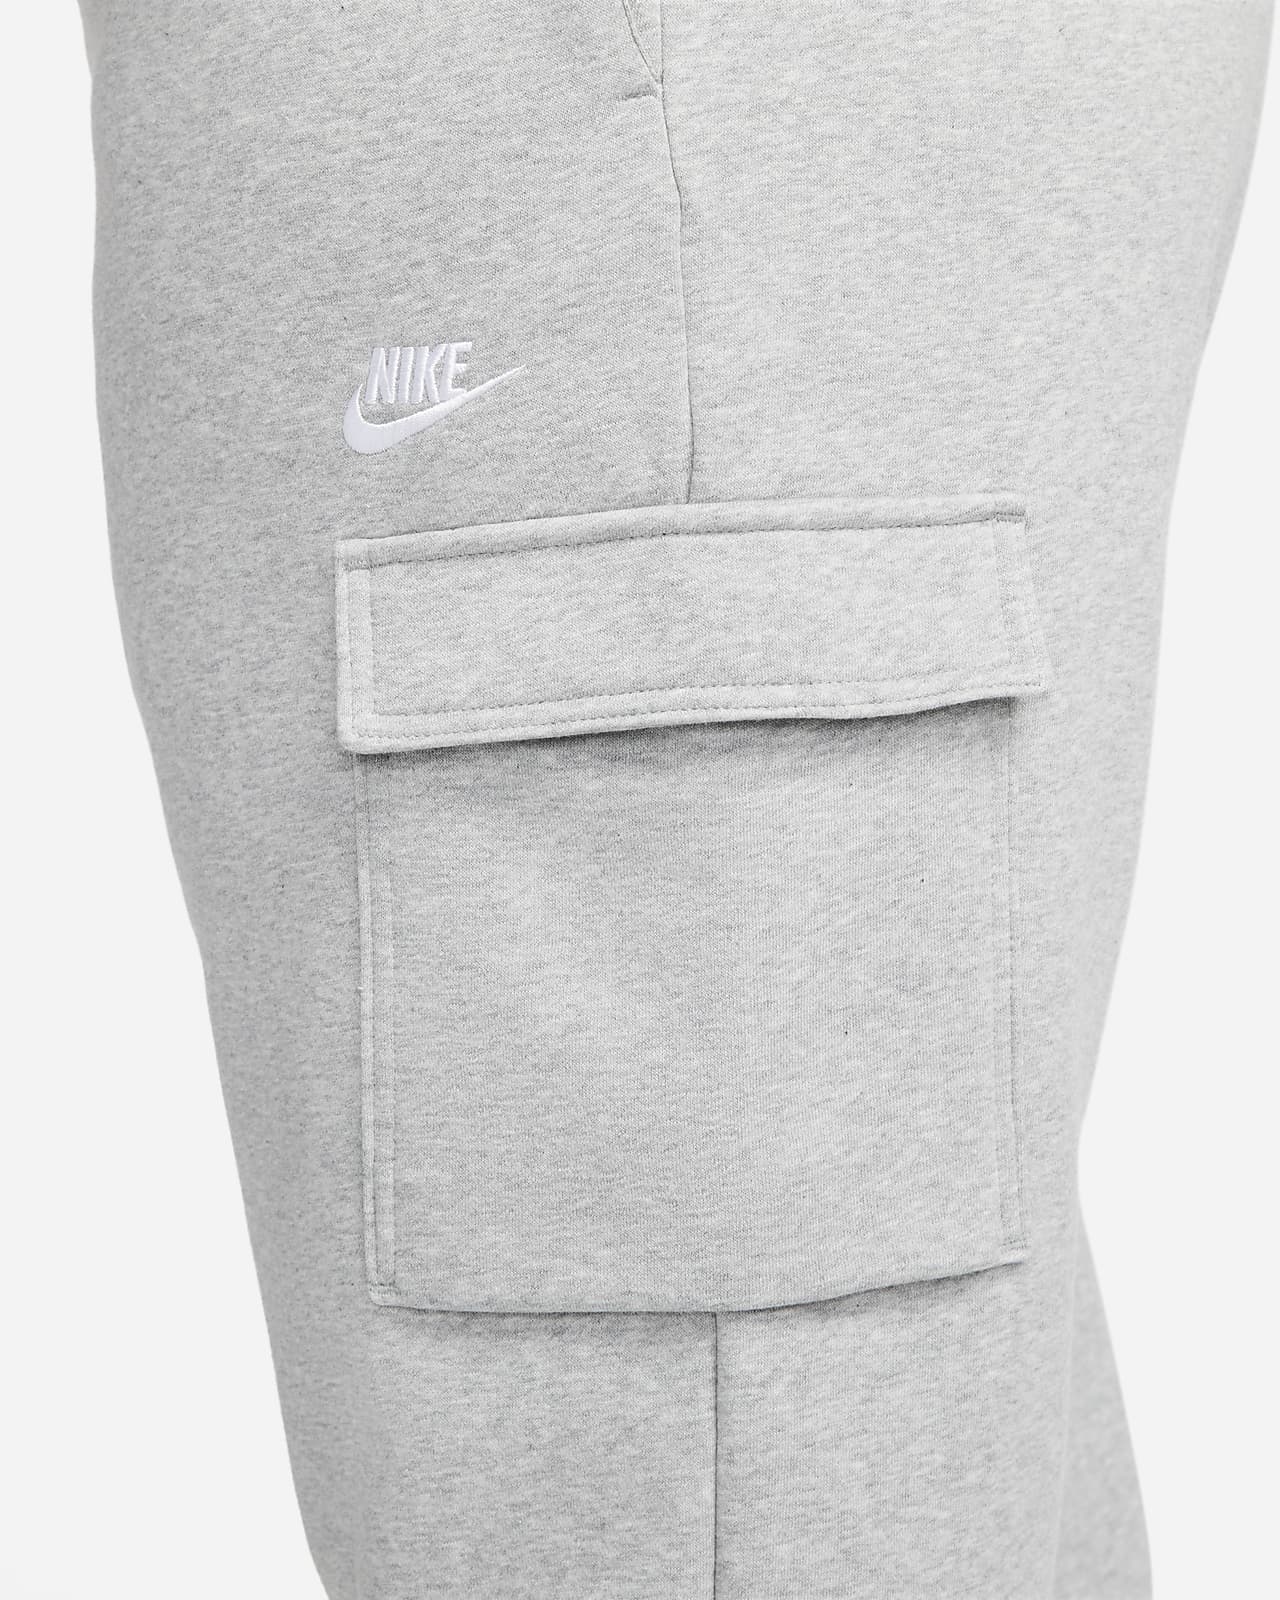 Nike Sportswear Women's Essential Fleece Mid-Rise Plus Pants - Black/White